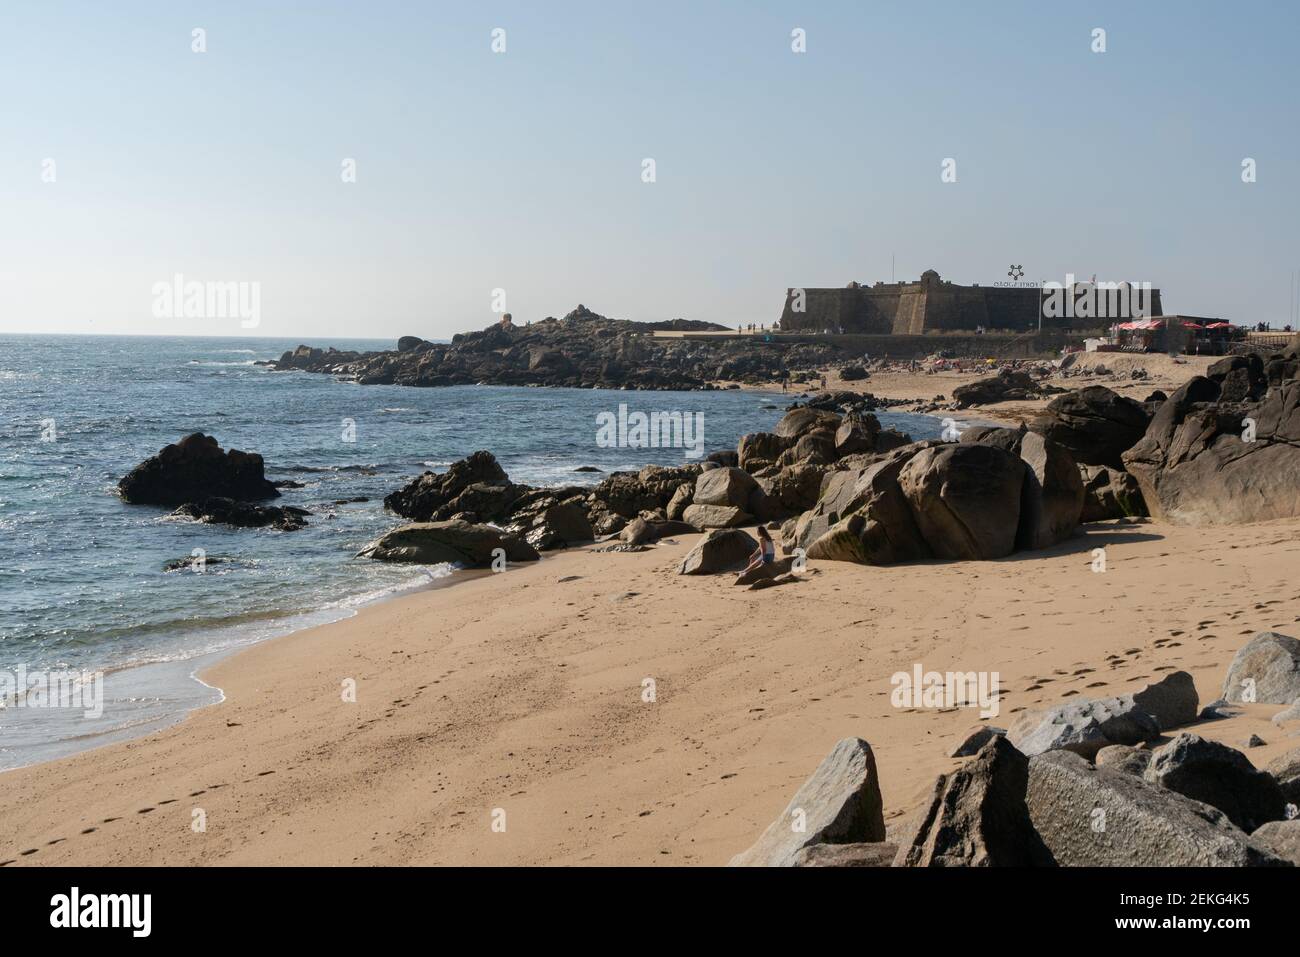 Vila do Conde beach, in Portugal Stock Photo